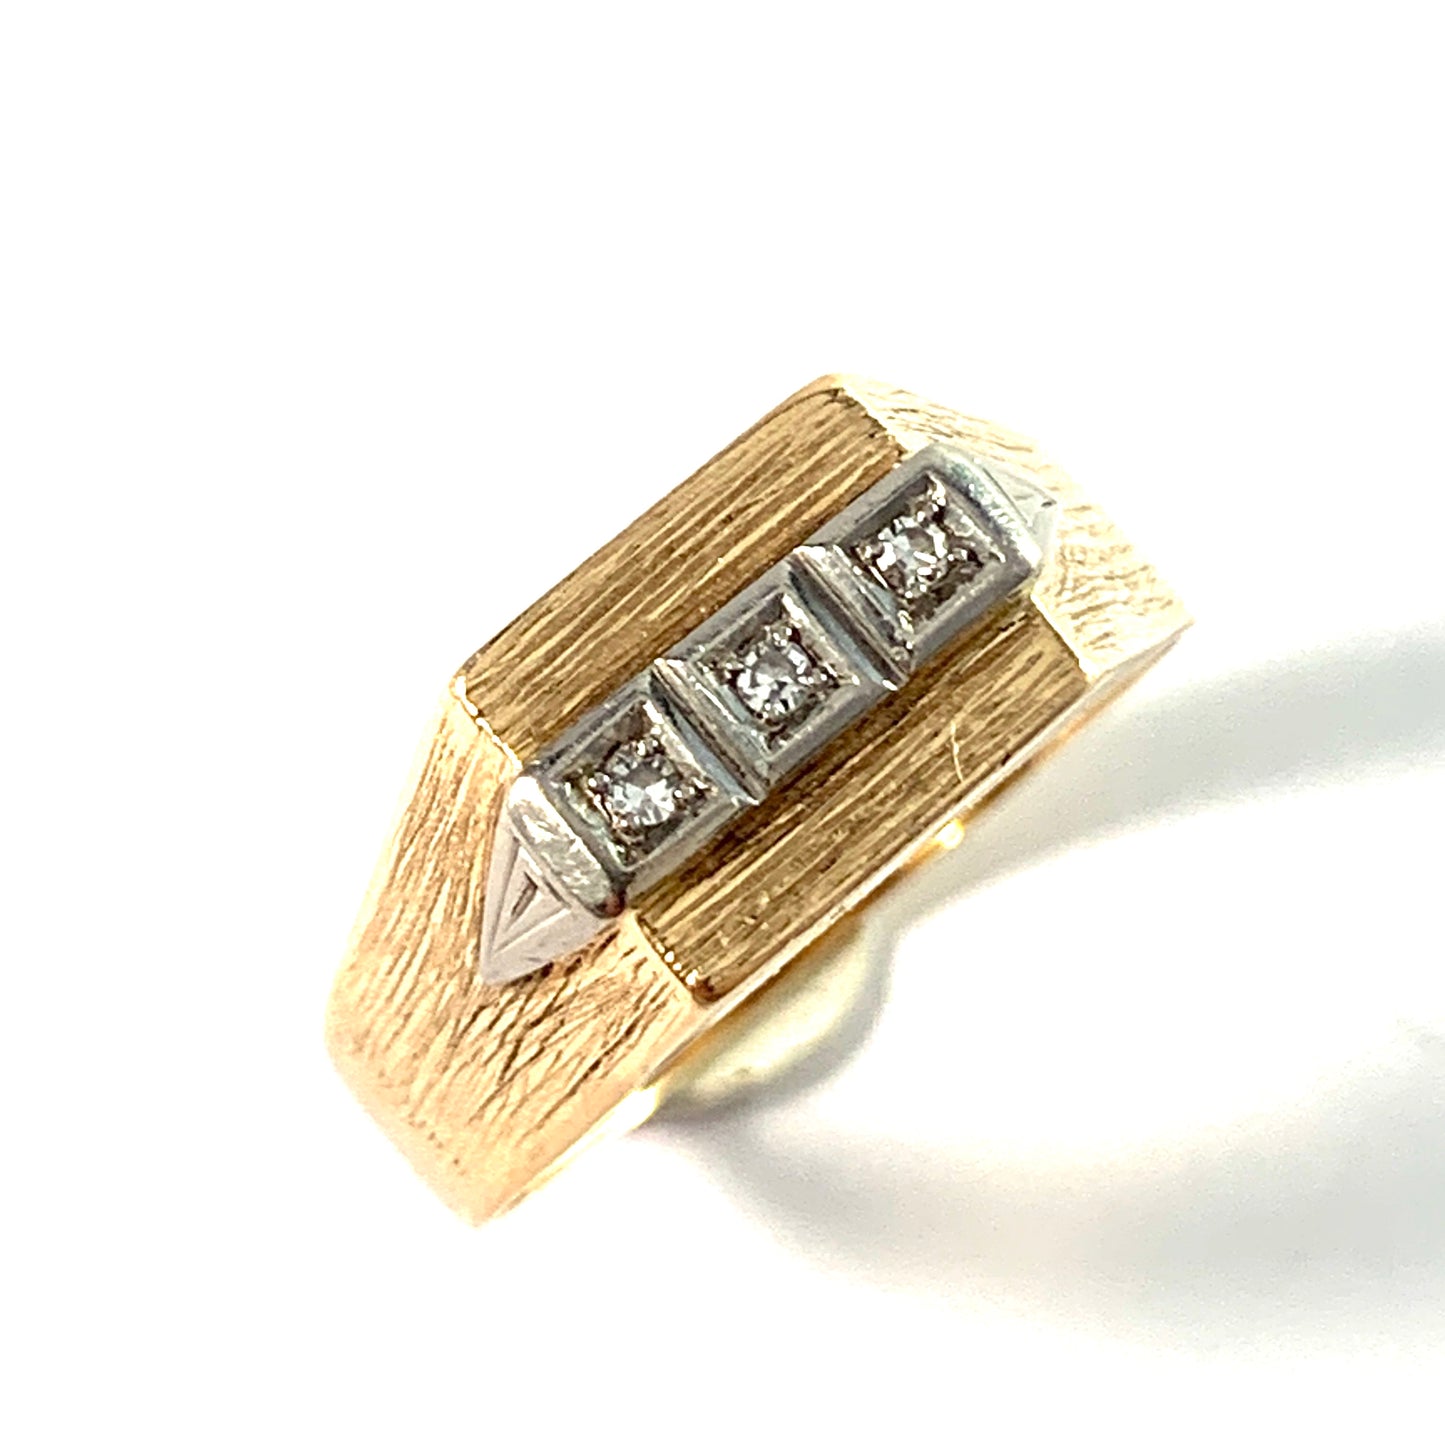 Atelje Stigbert, Sweden 1969. Vintage 18k Gold Diamond Ring.